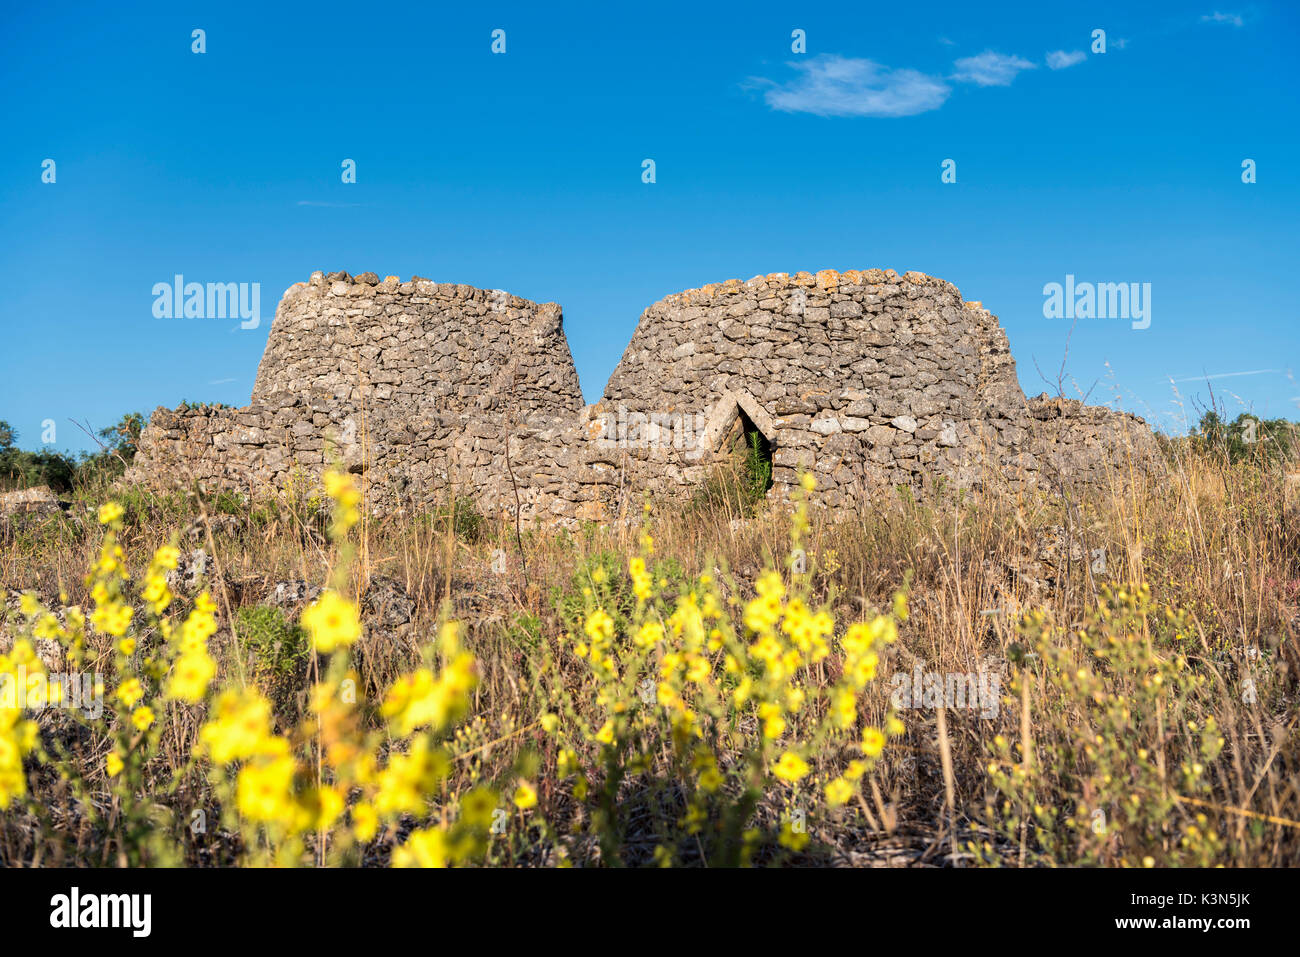 Casarano, province de Lecce, Pouilles, Salento, en Italie. Cabane en pierre sèche traditionnelle des Pouilles Banque D'Images